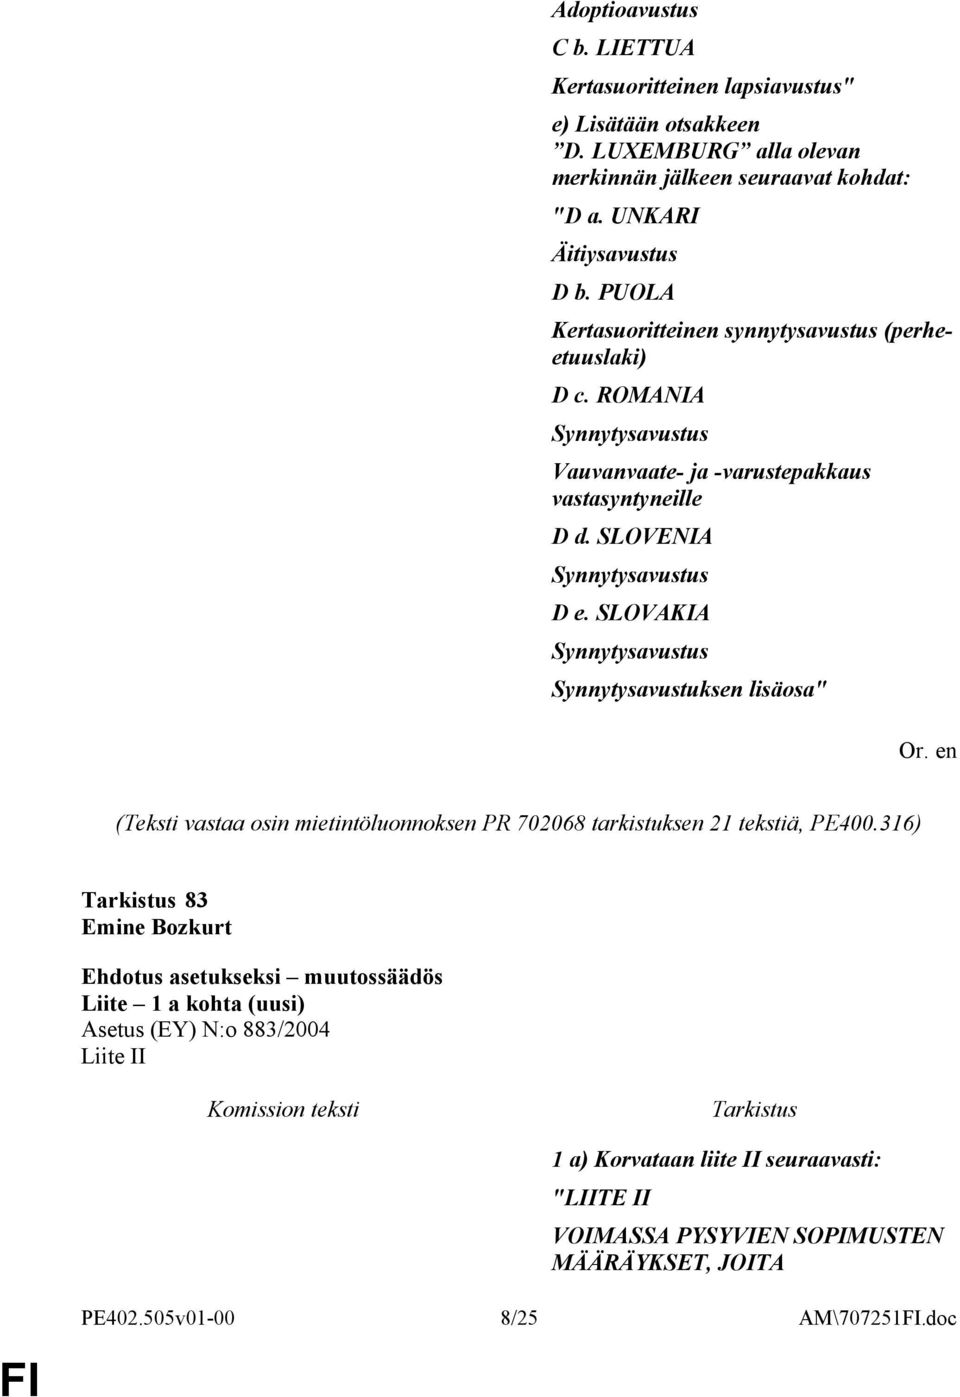 SLOVAKIA Synnytysavustus Synnytysavustuksen lisäosa" Or. en (Teksti vastaa osin mietintöluonnoksen PR 702068 tarkistuksen 21 tekstiä, PE400.